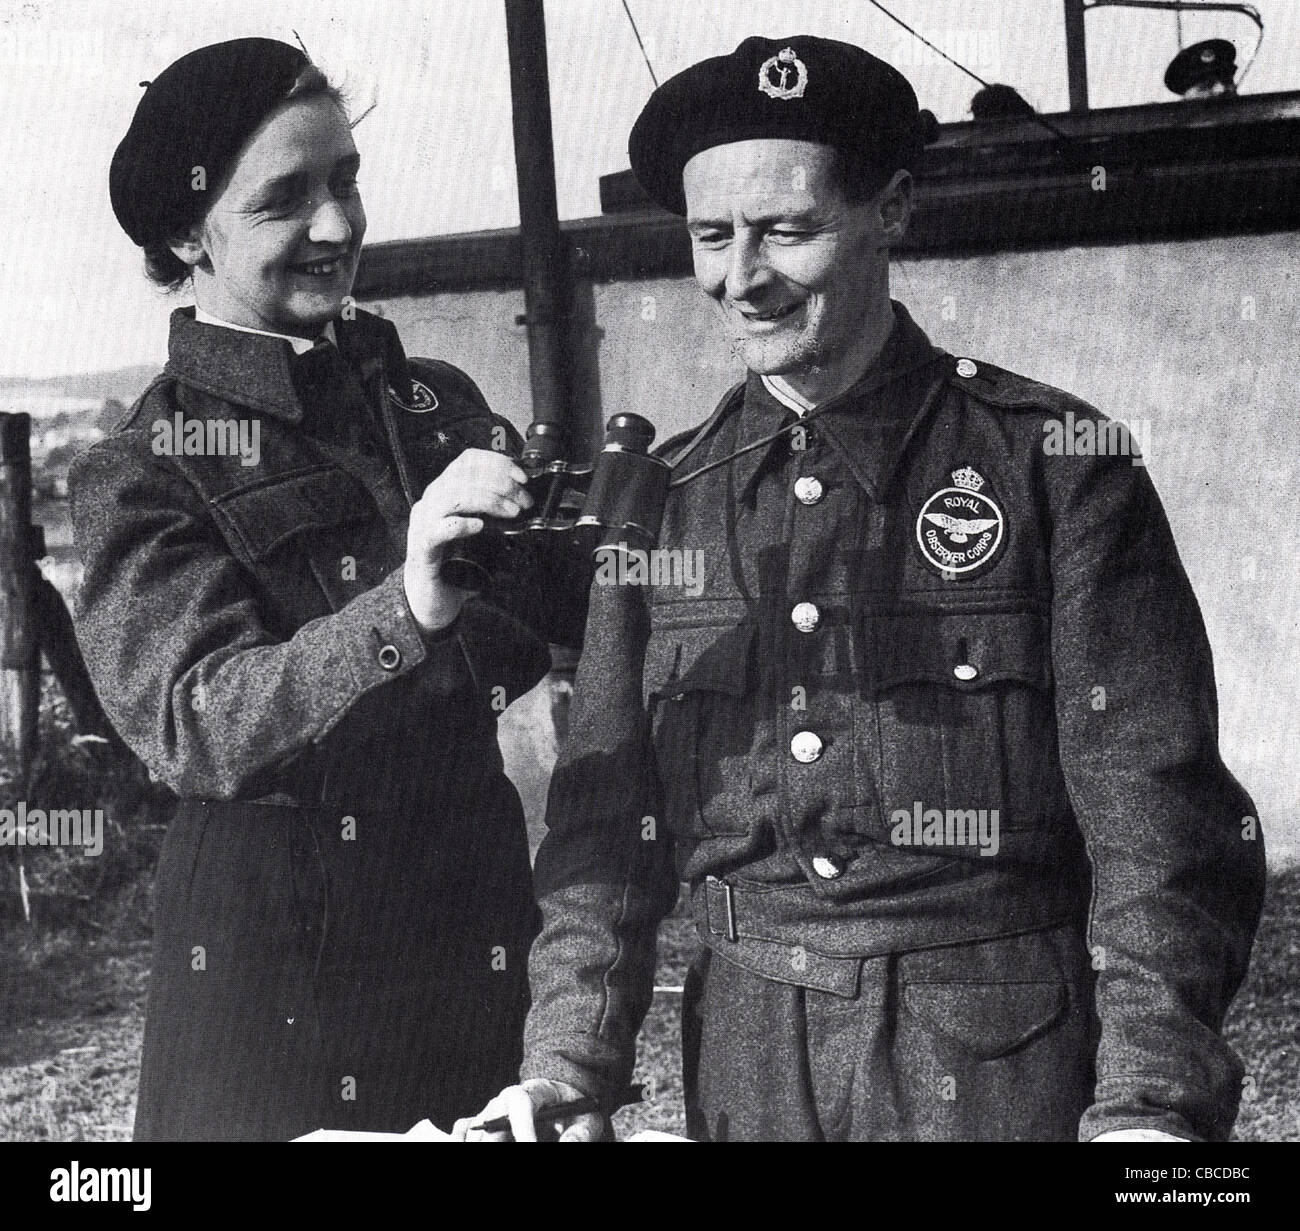 Britische WW11 Royal Observer Corps Operatoren. Dieser Dienst überwacht feindliche Flugzeuge Ankündigungsfrist von Bombenangriffen zu geben. Stockfoto